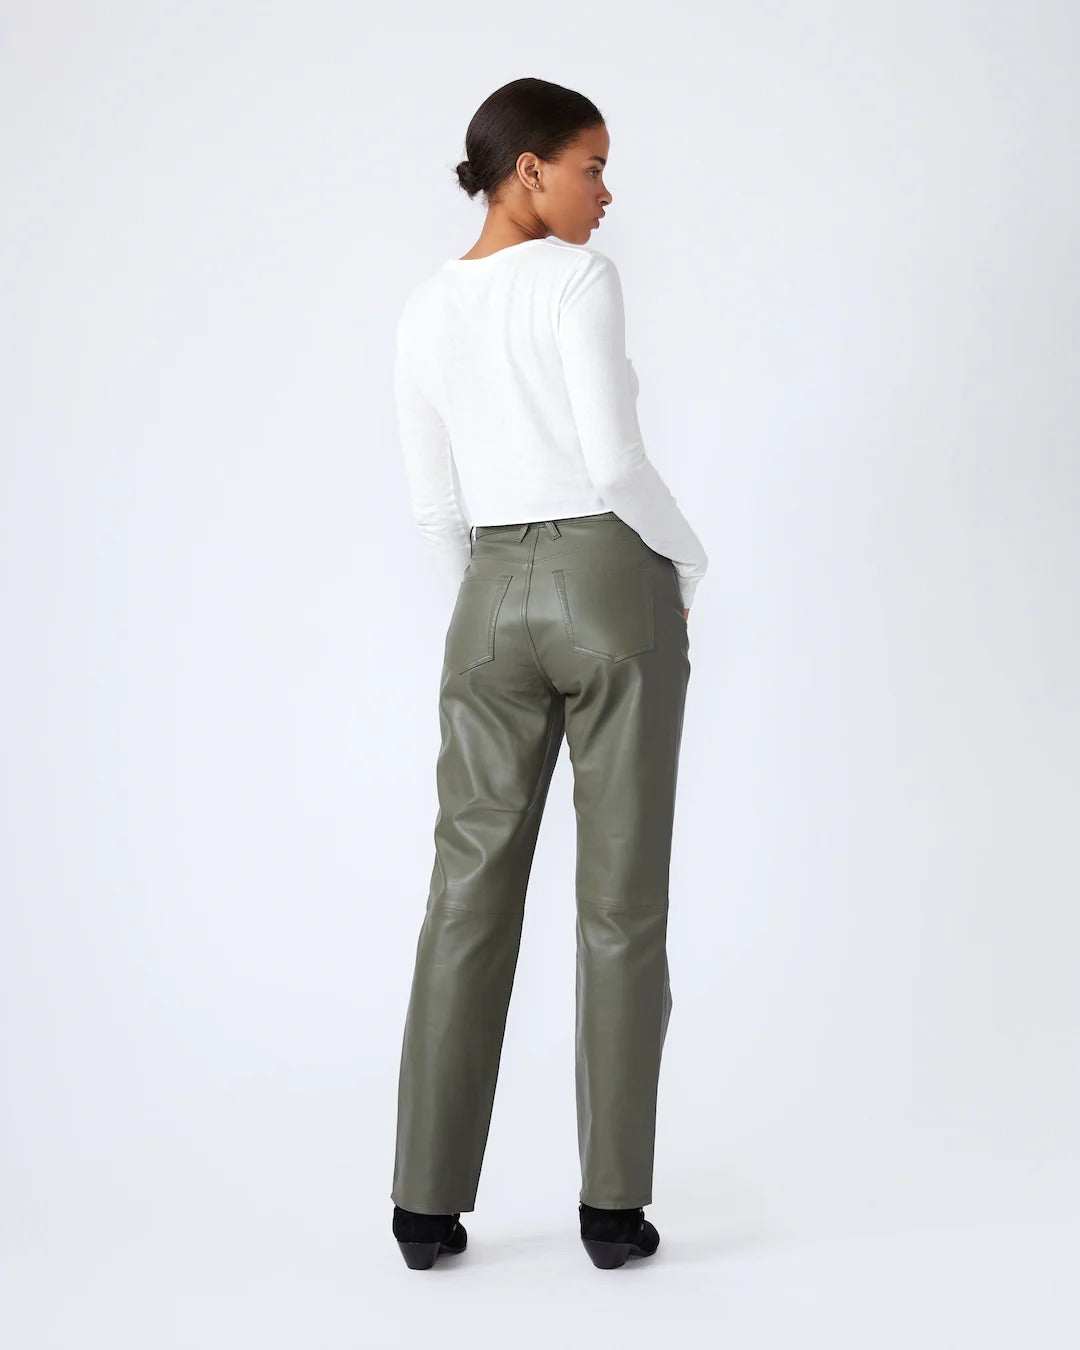 ASOS Faux Leather Pants | Leather pants, Faux leather pants, Clothes design